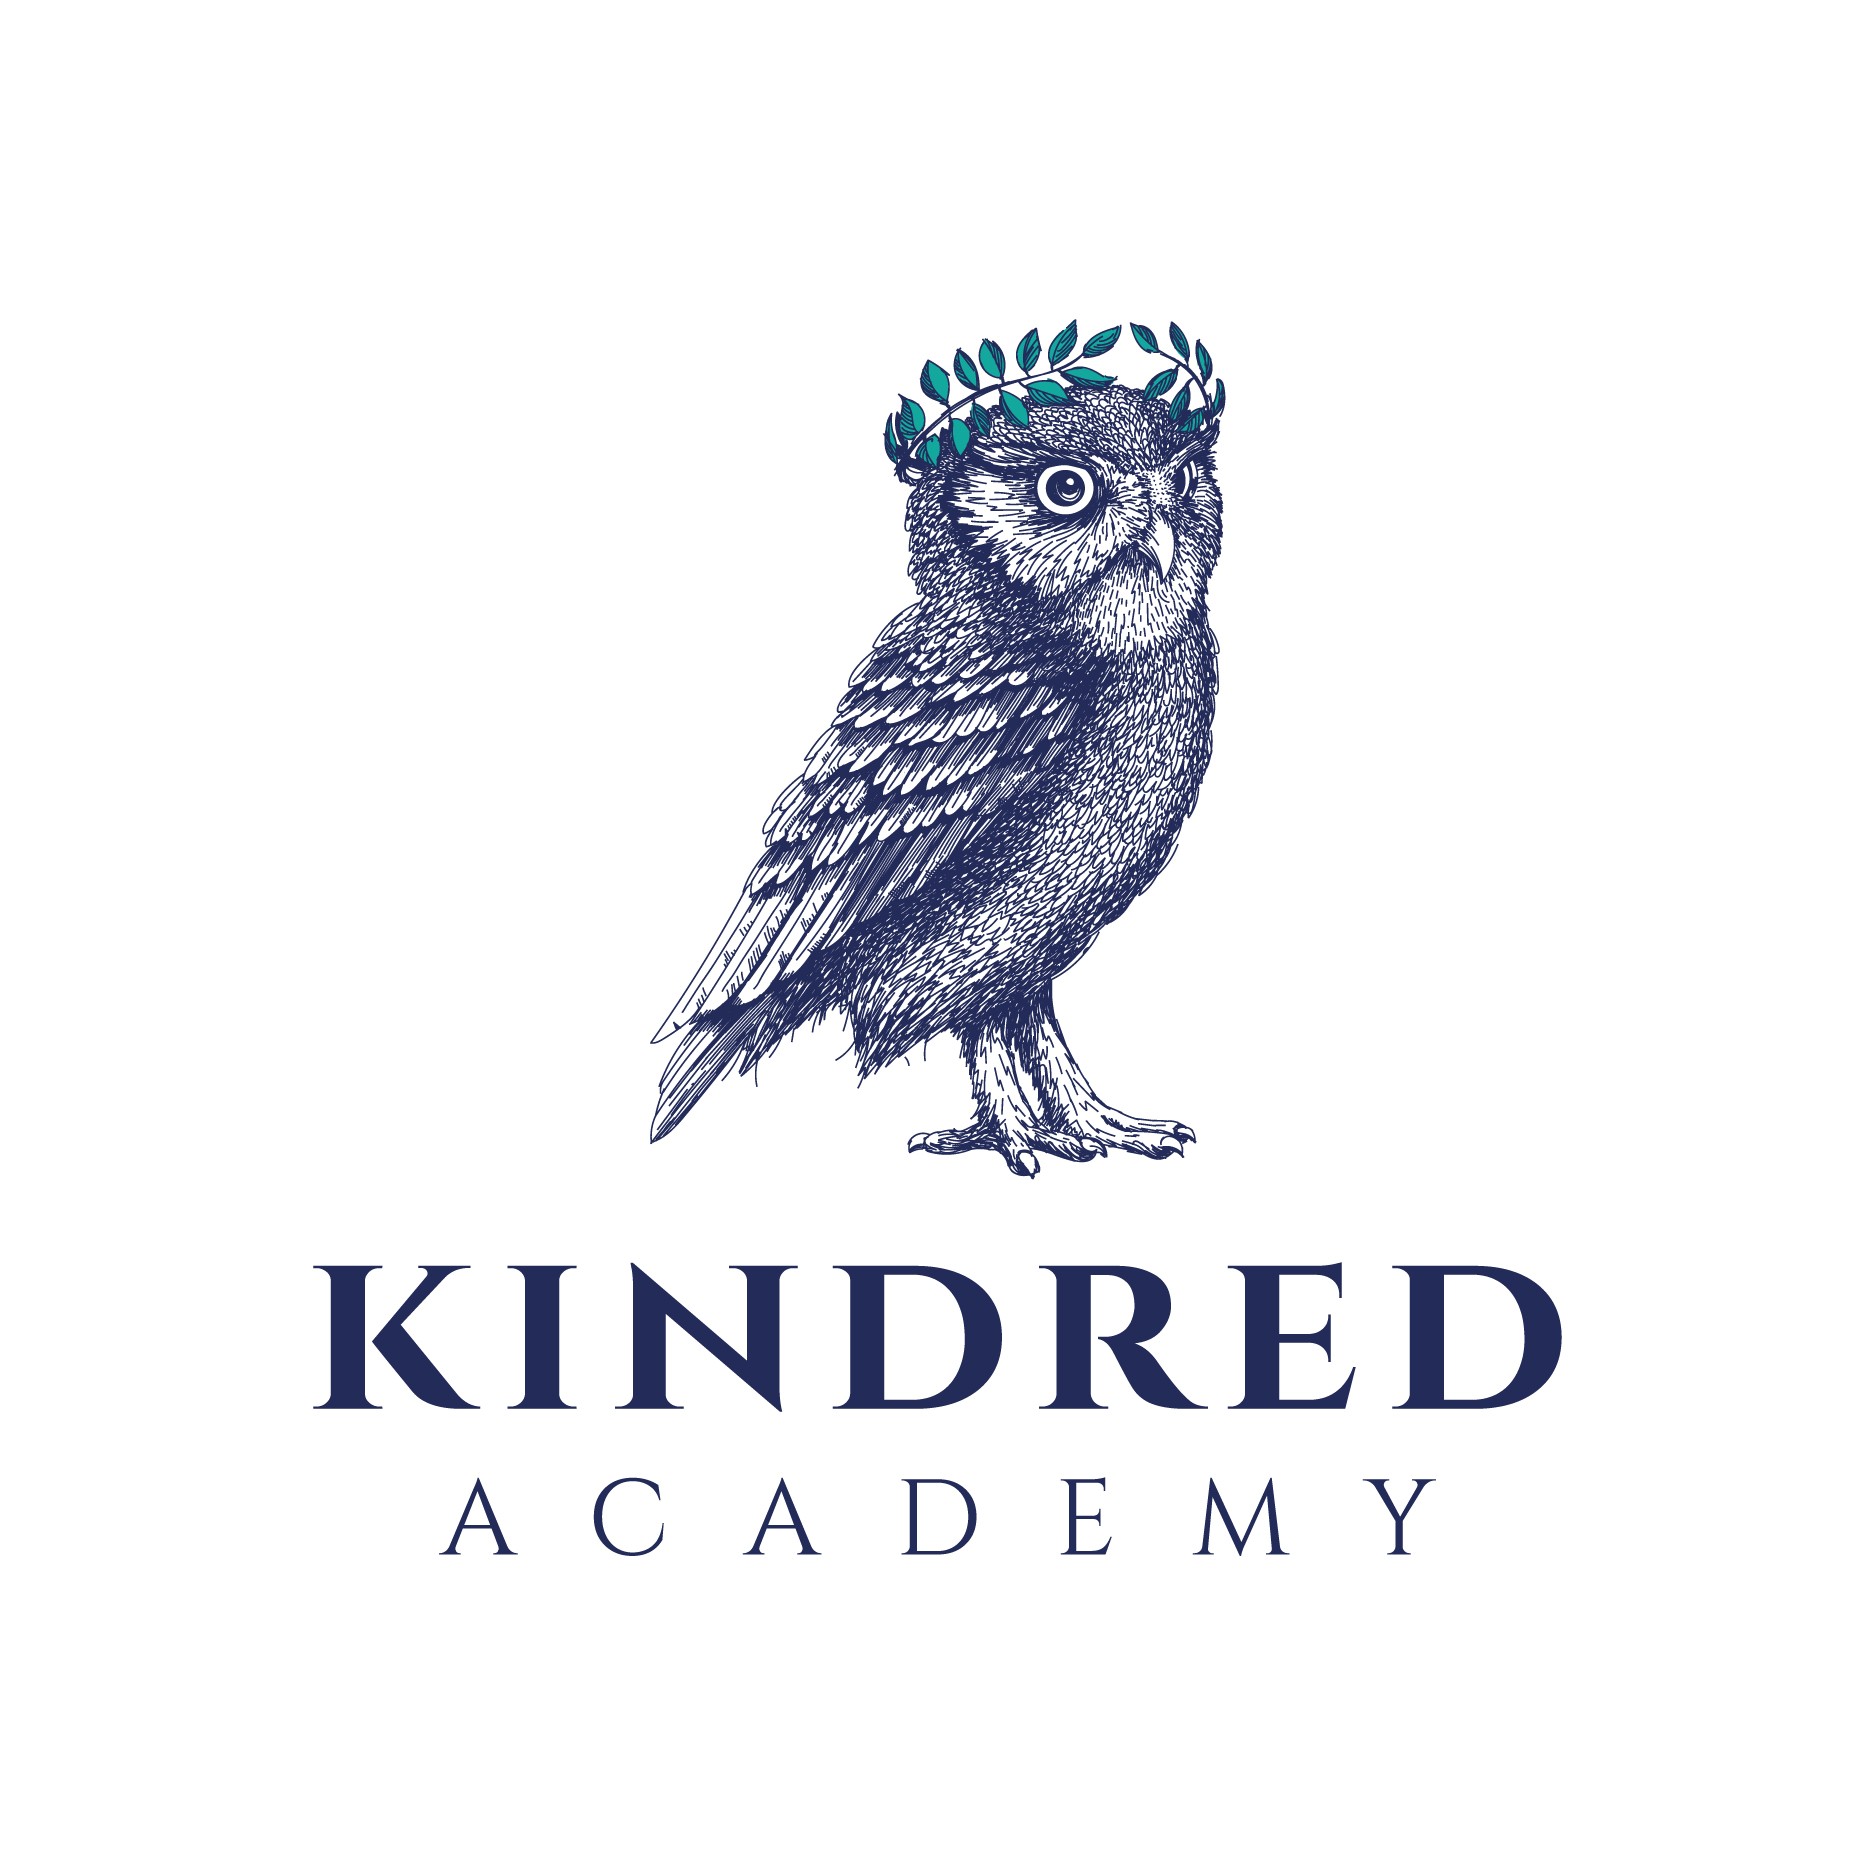 Kindred academy owl logo